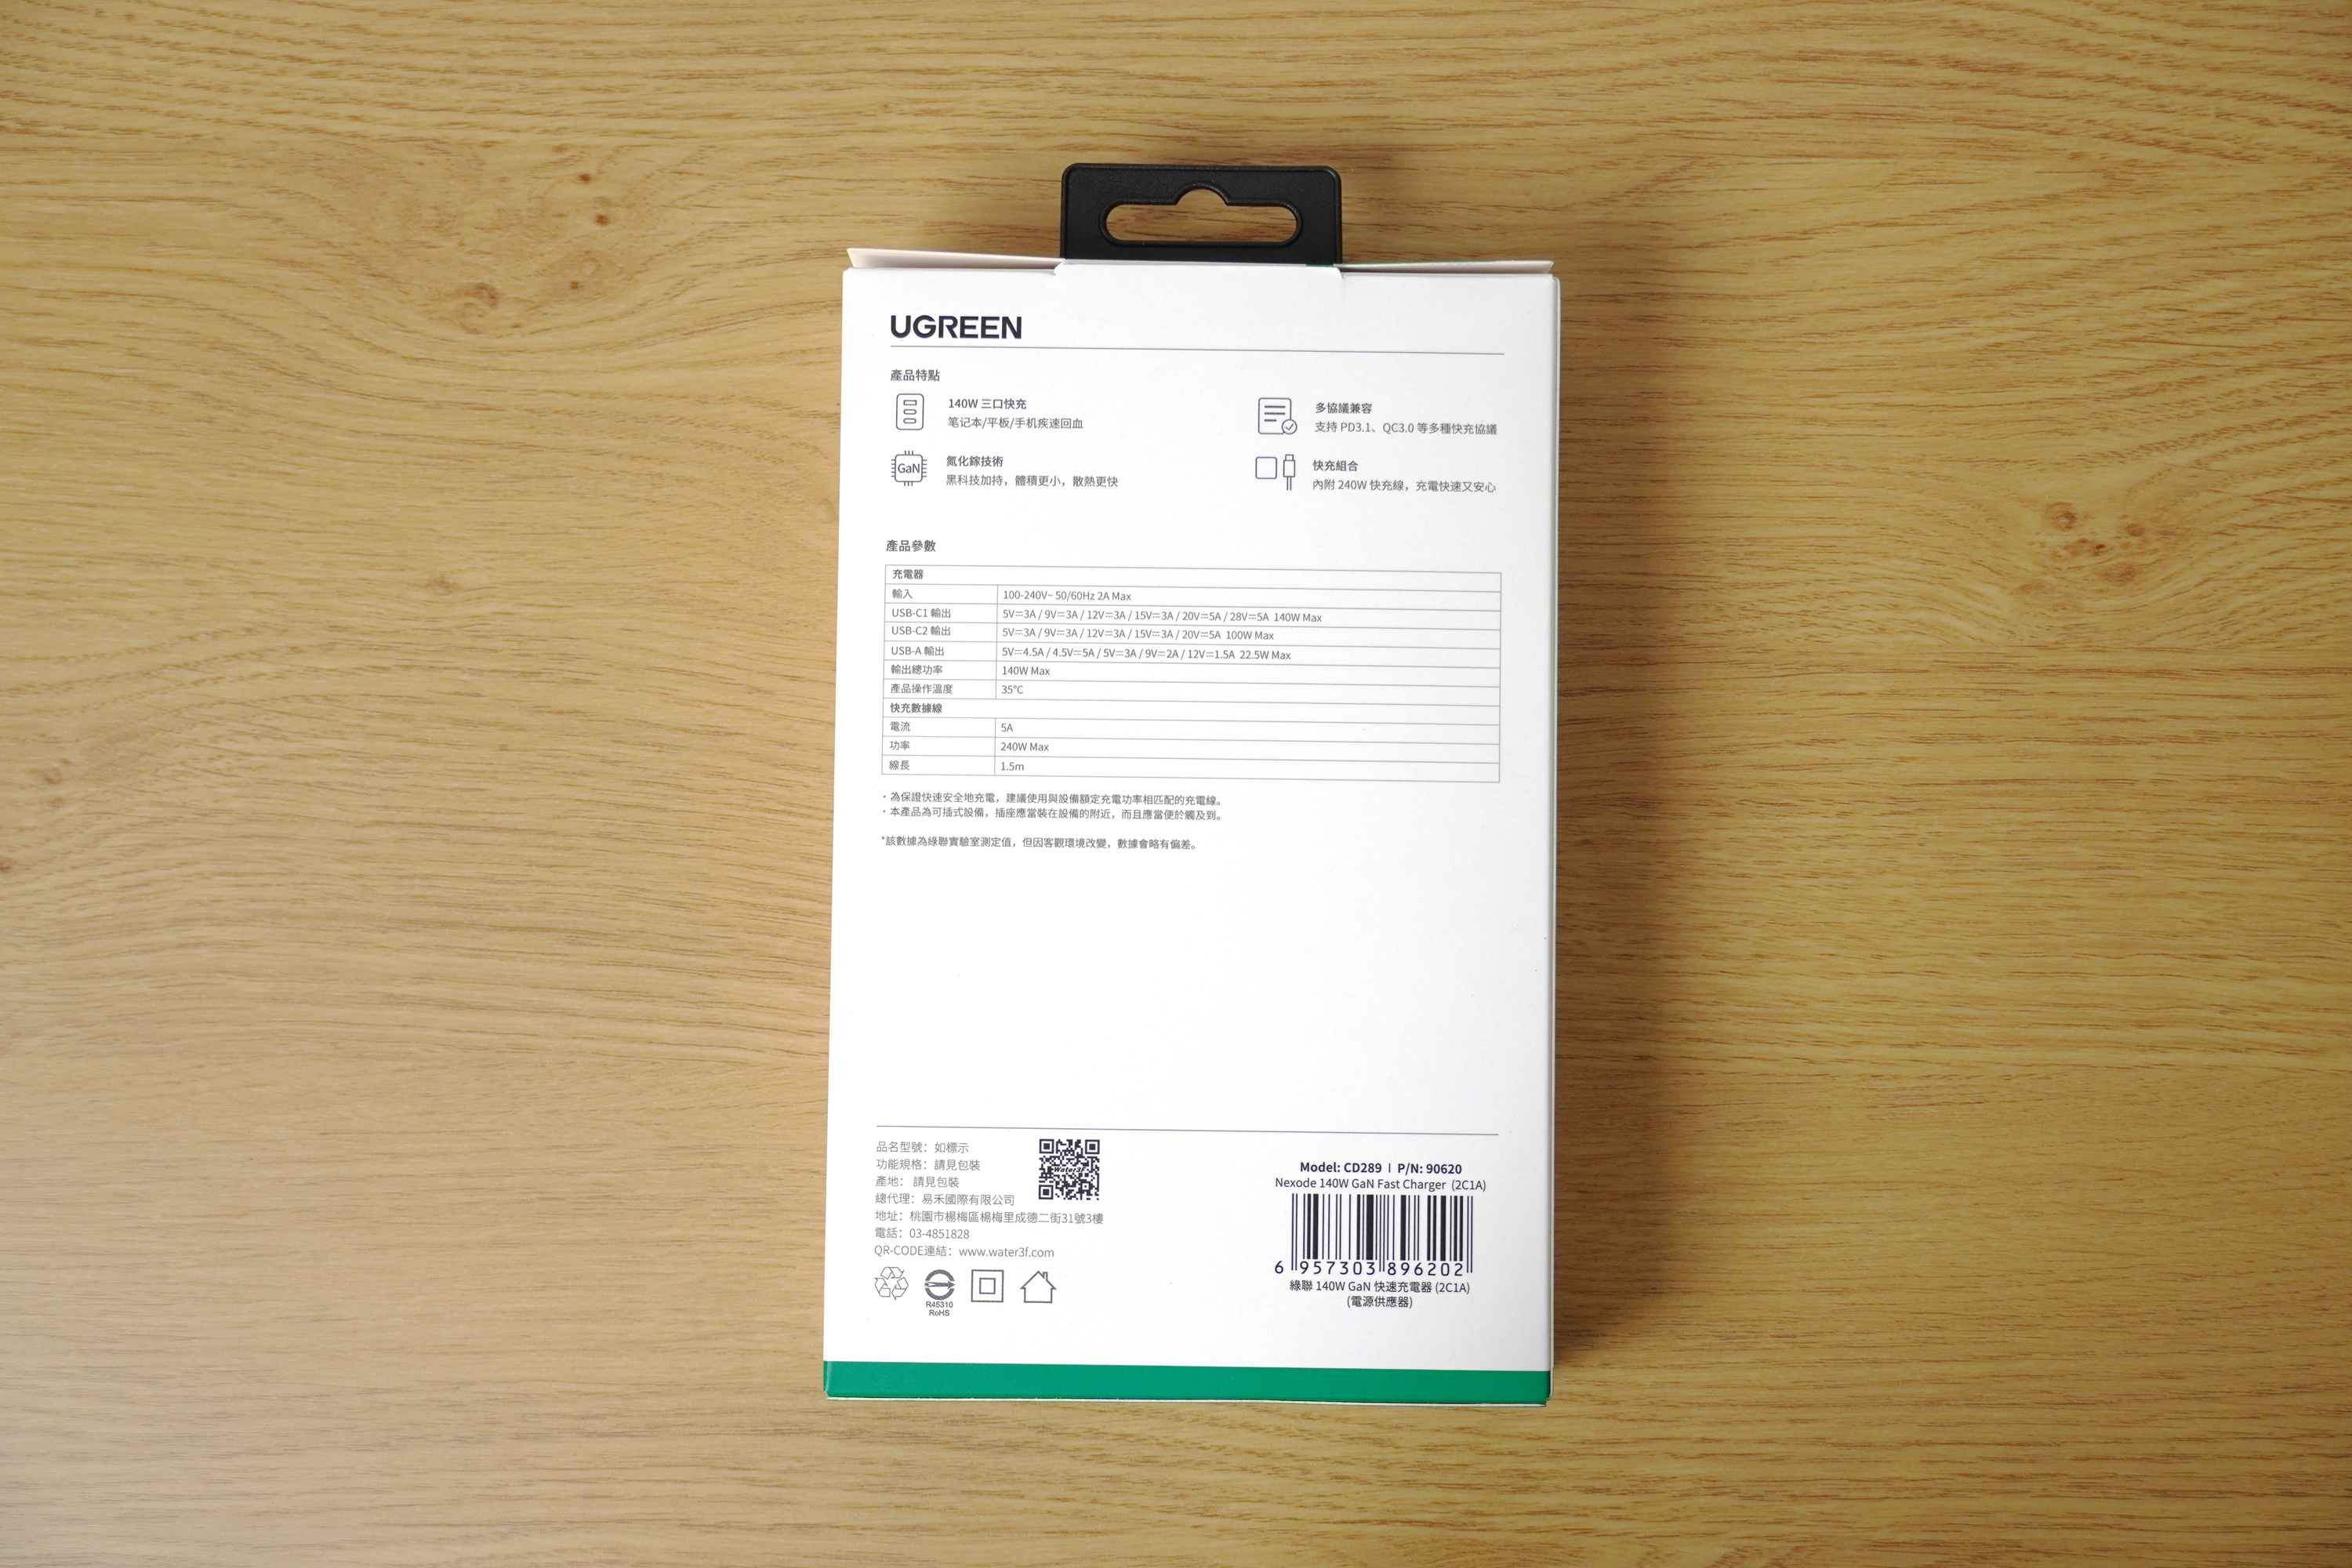 白色的ugreen綠聯140w 2C1A 氮化鎵快充充電器包裝背面有2個USB-C輸出孔及1個USB-A輸出孔的輸出功率、總輸出功率140w和搭配的1.5m快充數據線電流5A、最大功率240w等產品資訊。